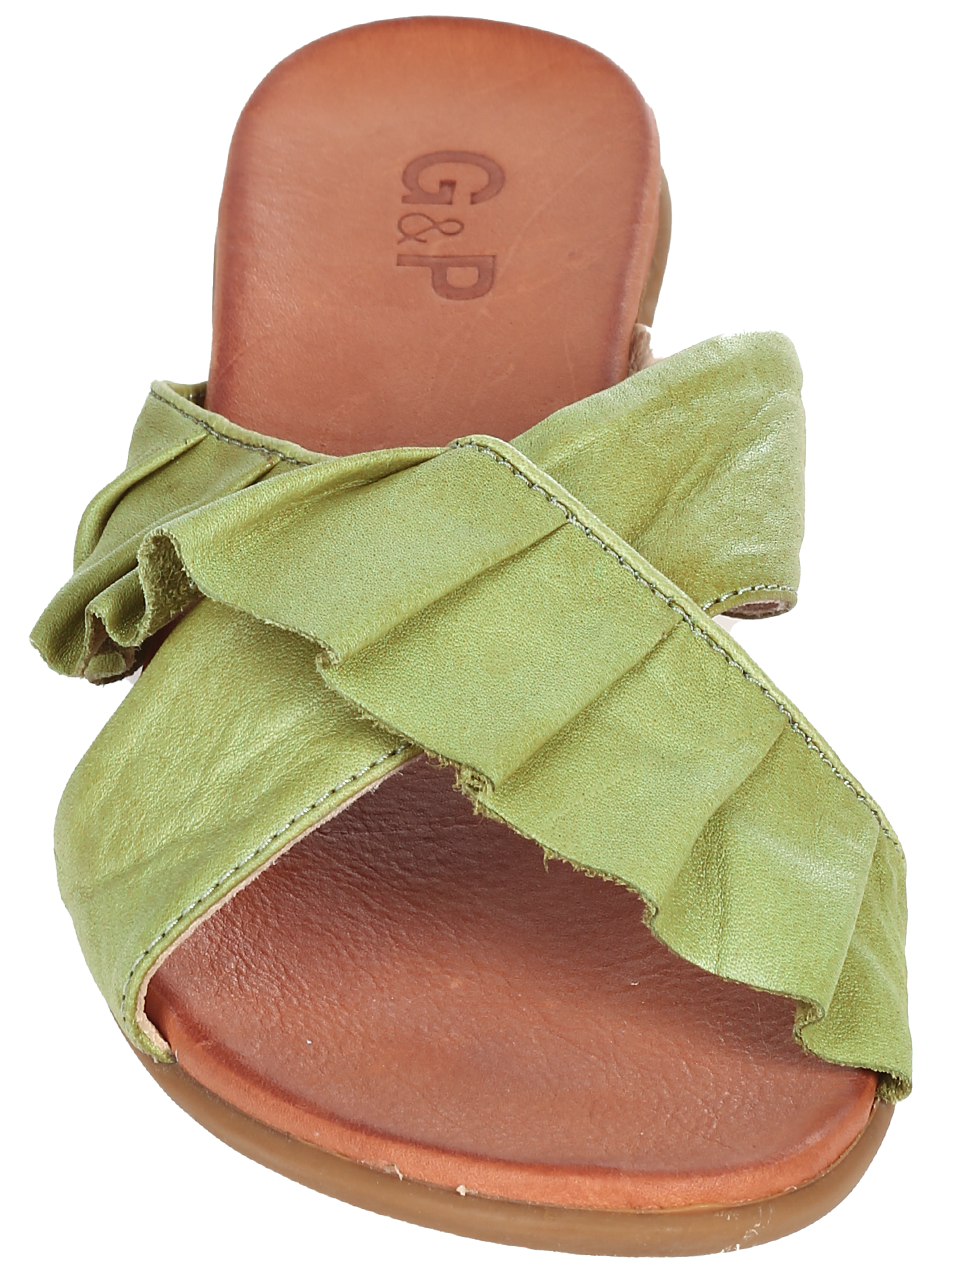 Ежедневни дамски чехли от естествена кожа в зелено KIRA 58 herbel green